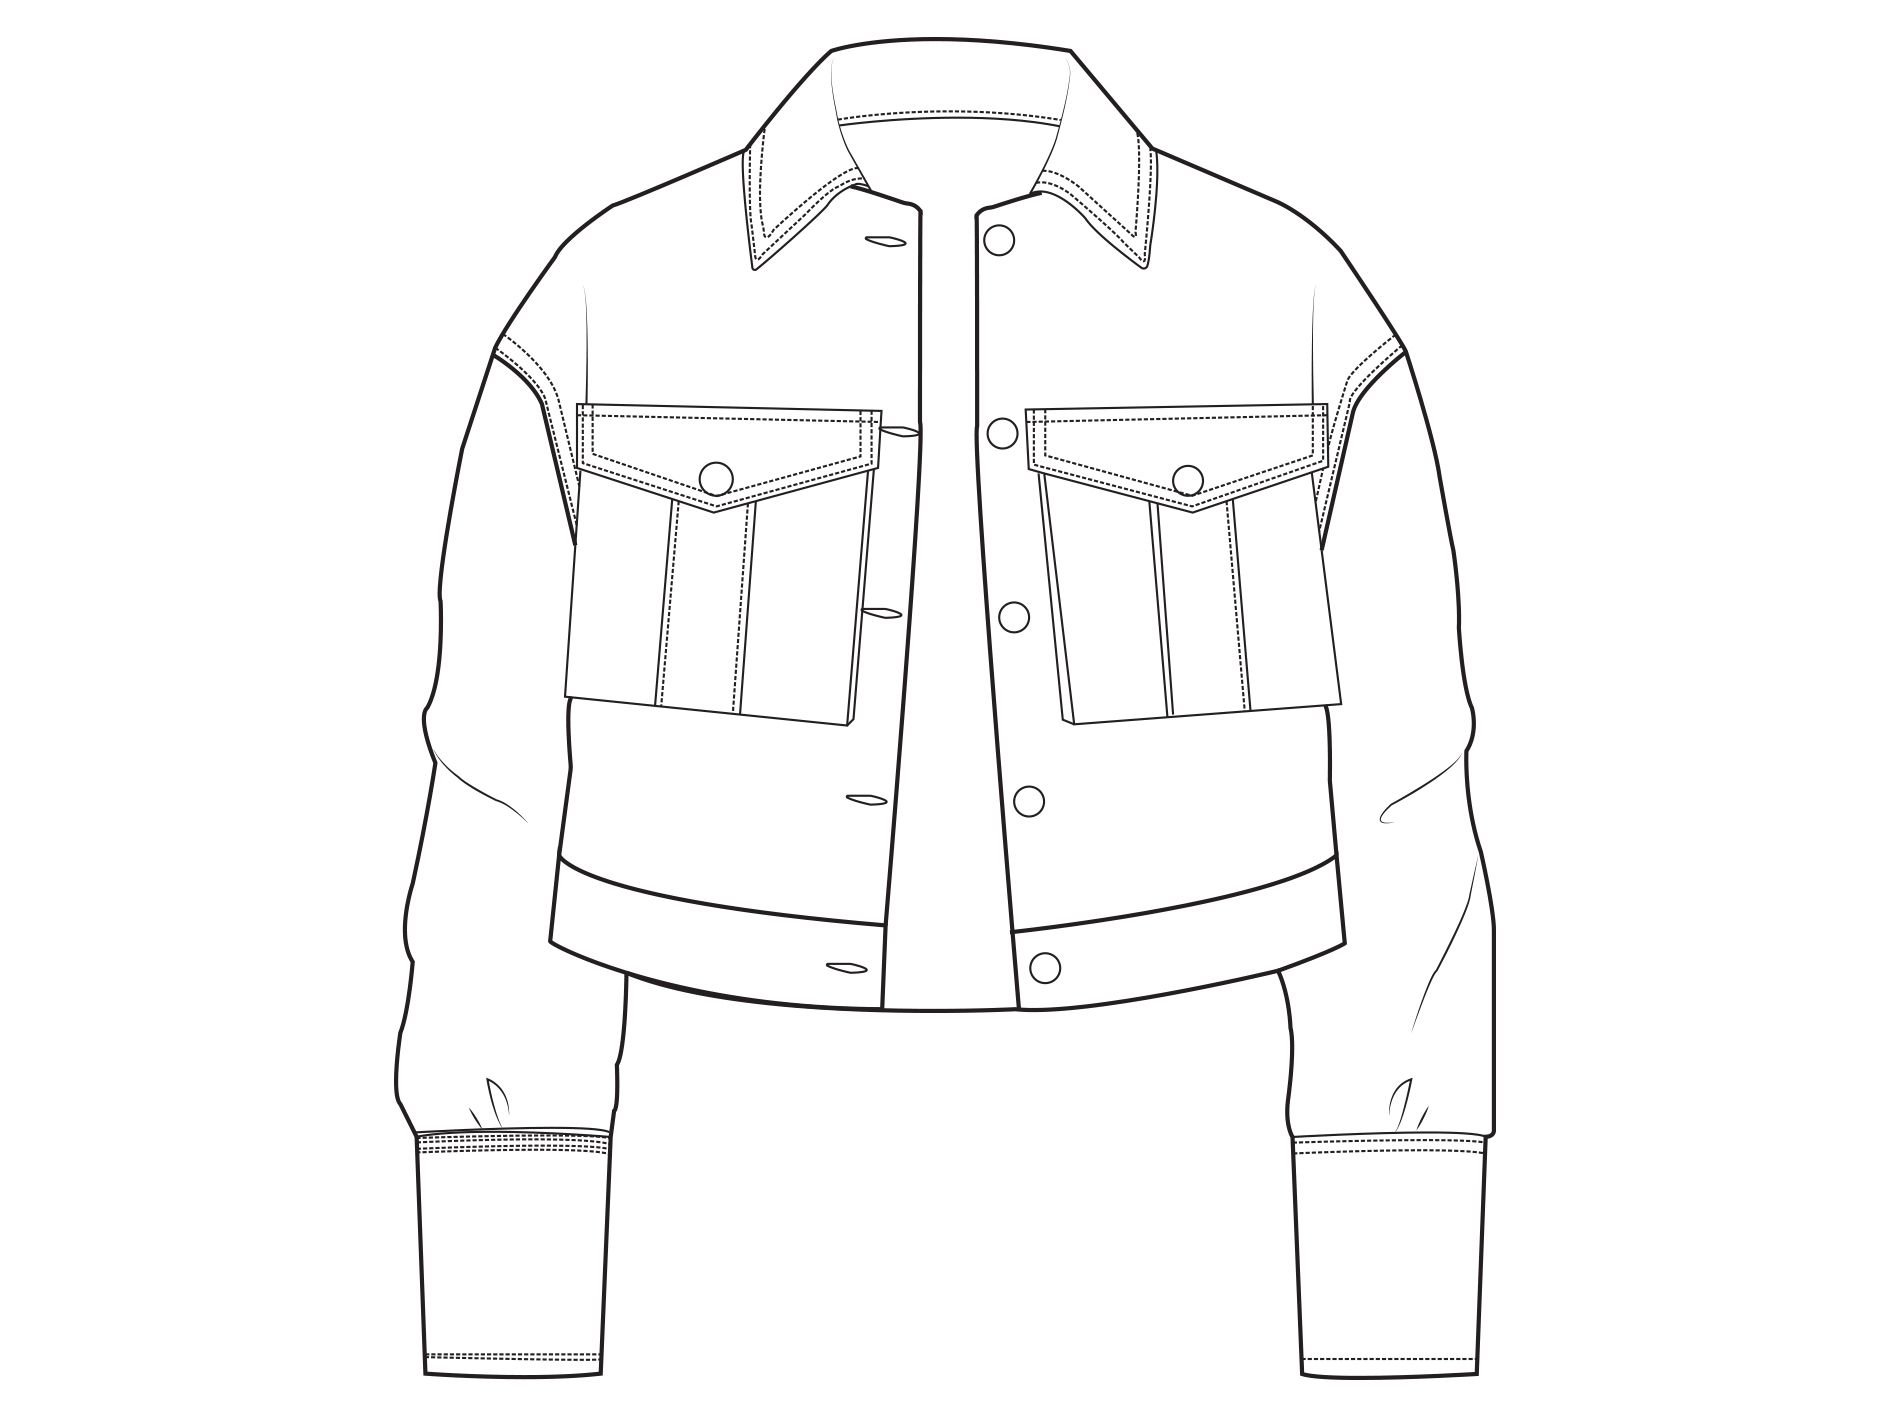 Технический эскиз джинсовой куртки